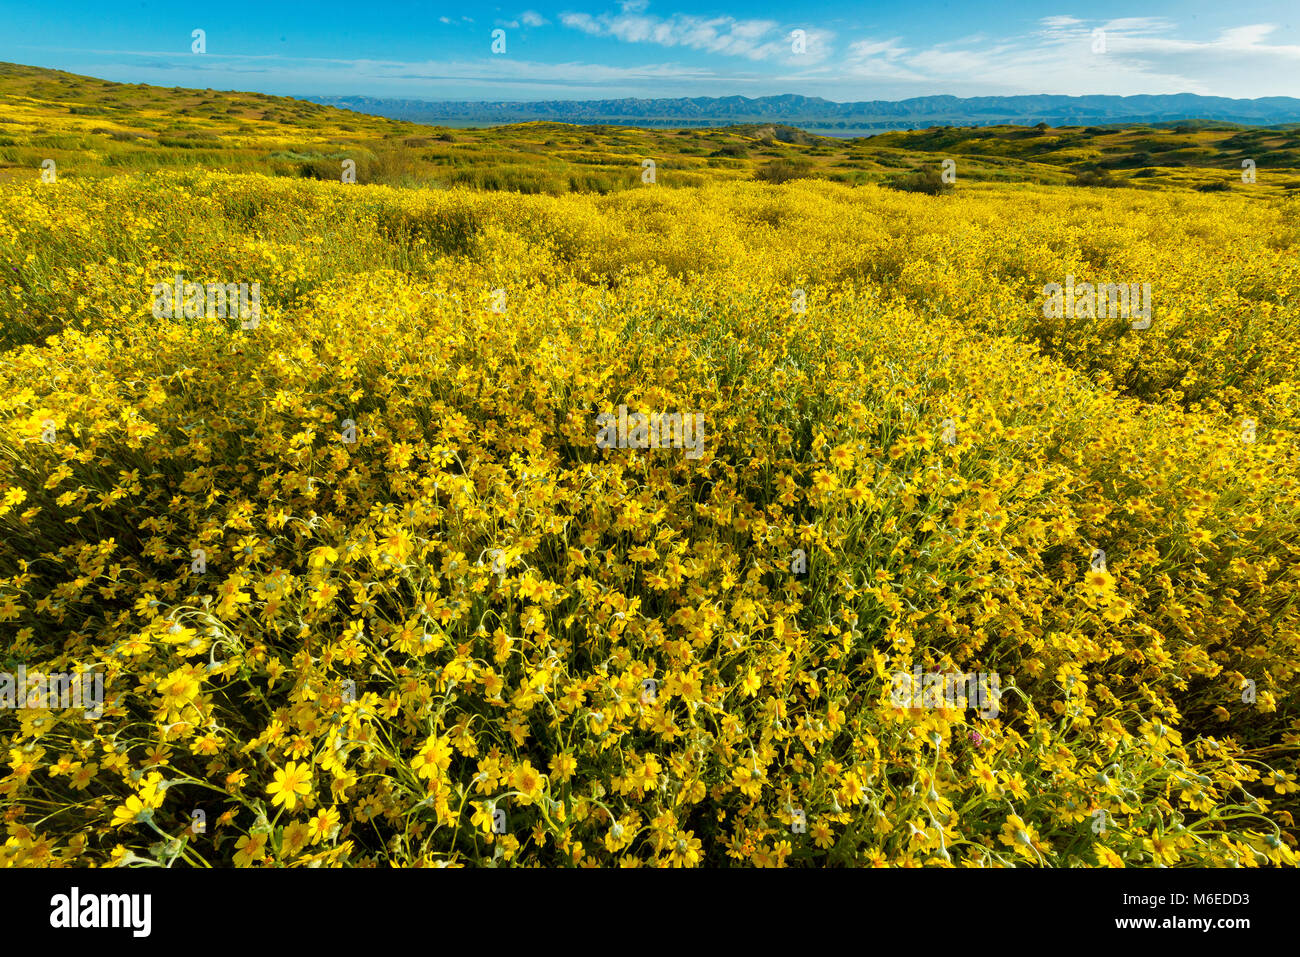 Fiddlenecks, Monolopia, Tremblor Range, Carizzo Plain National Monument, San Luis Obispo County, California Stock Photo